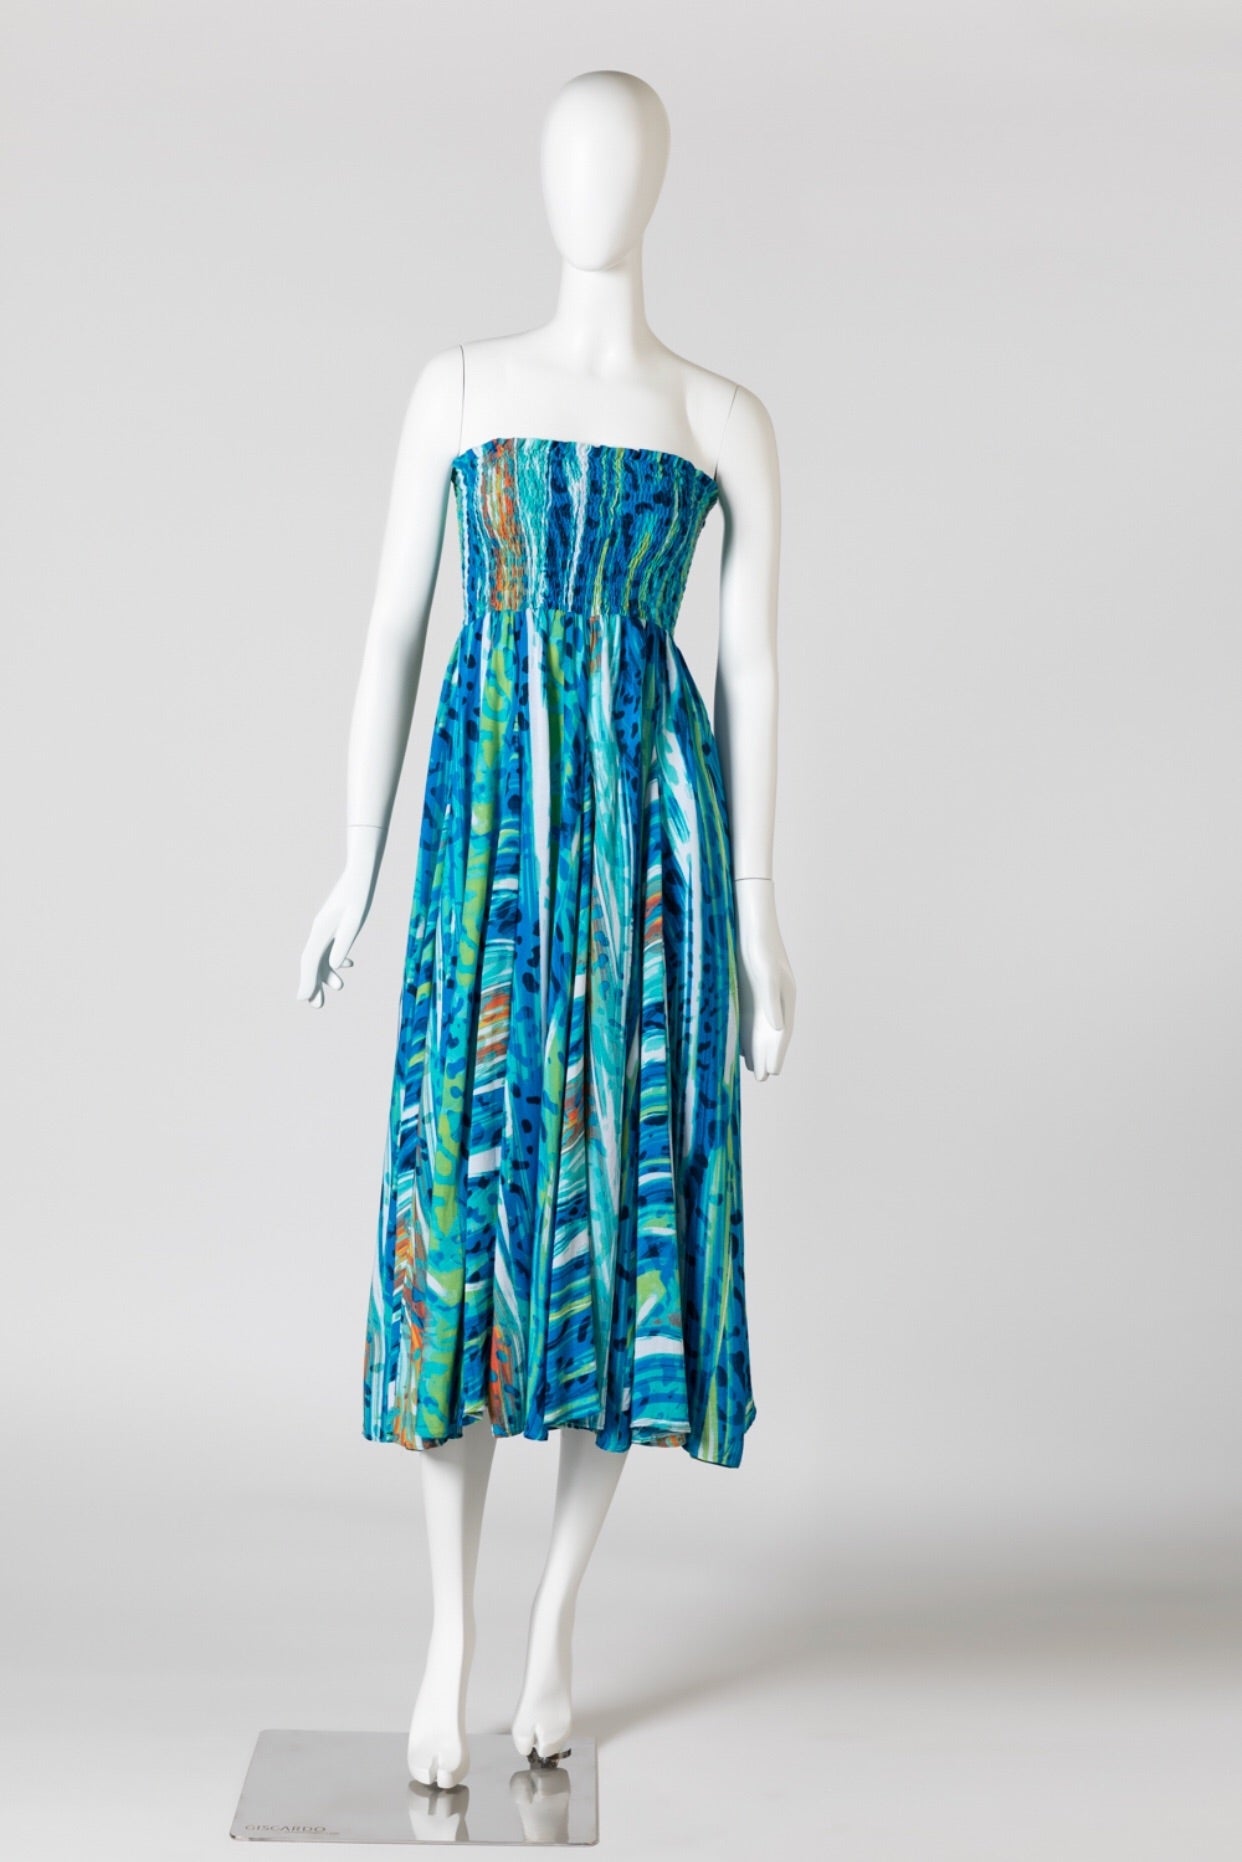 Blue water melon print skirt/dress